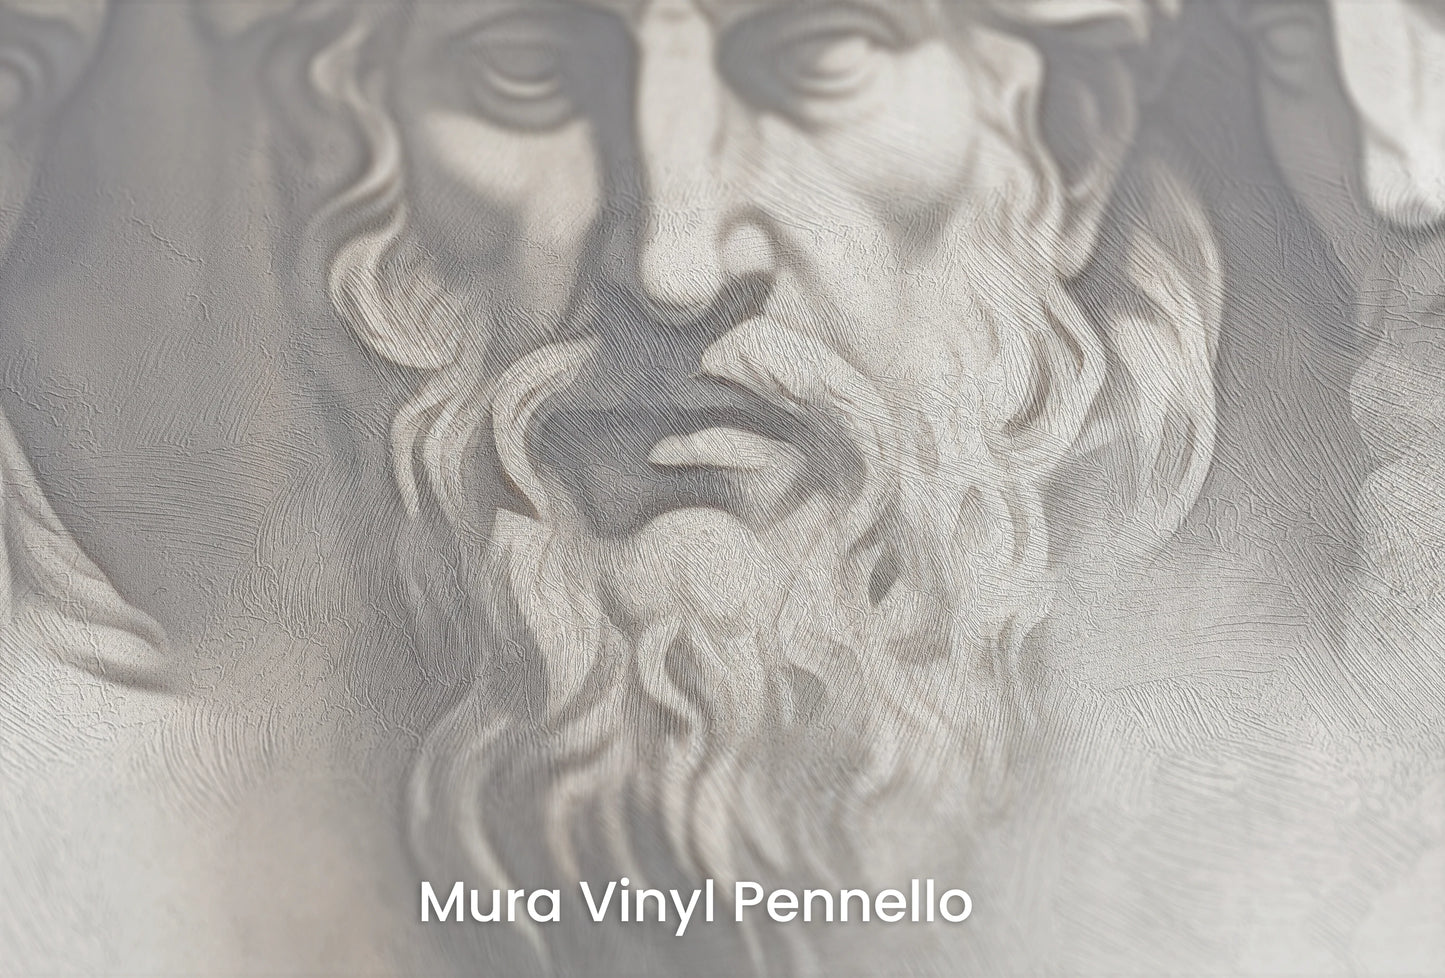 Zbliżenie na artystyczną fototapetę o nazwie Epicurean Reflection na podłożu Mura Vinyl Pennello - faktura pociągnięć pędzla malarskiego.